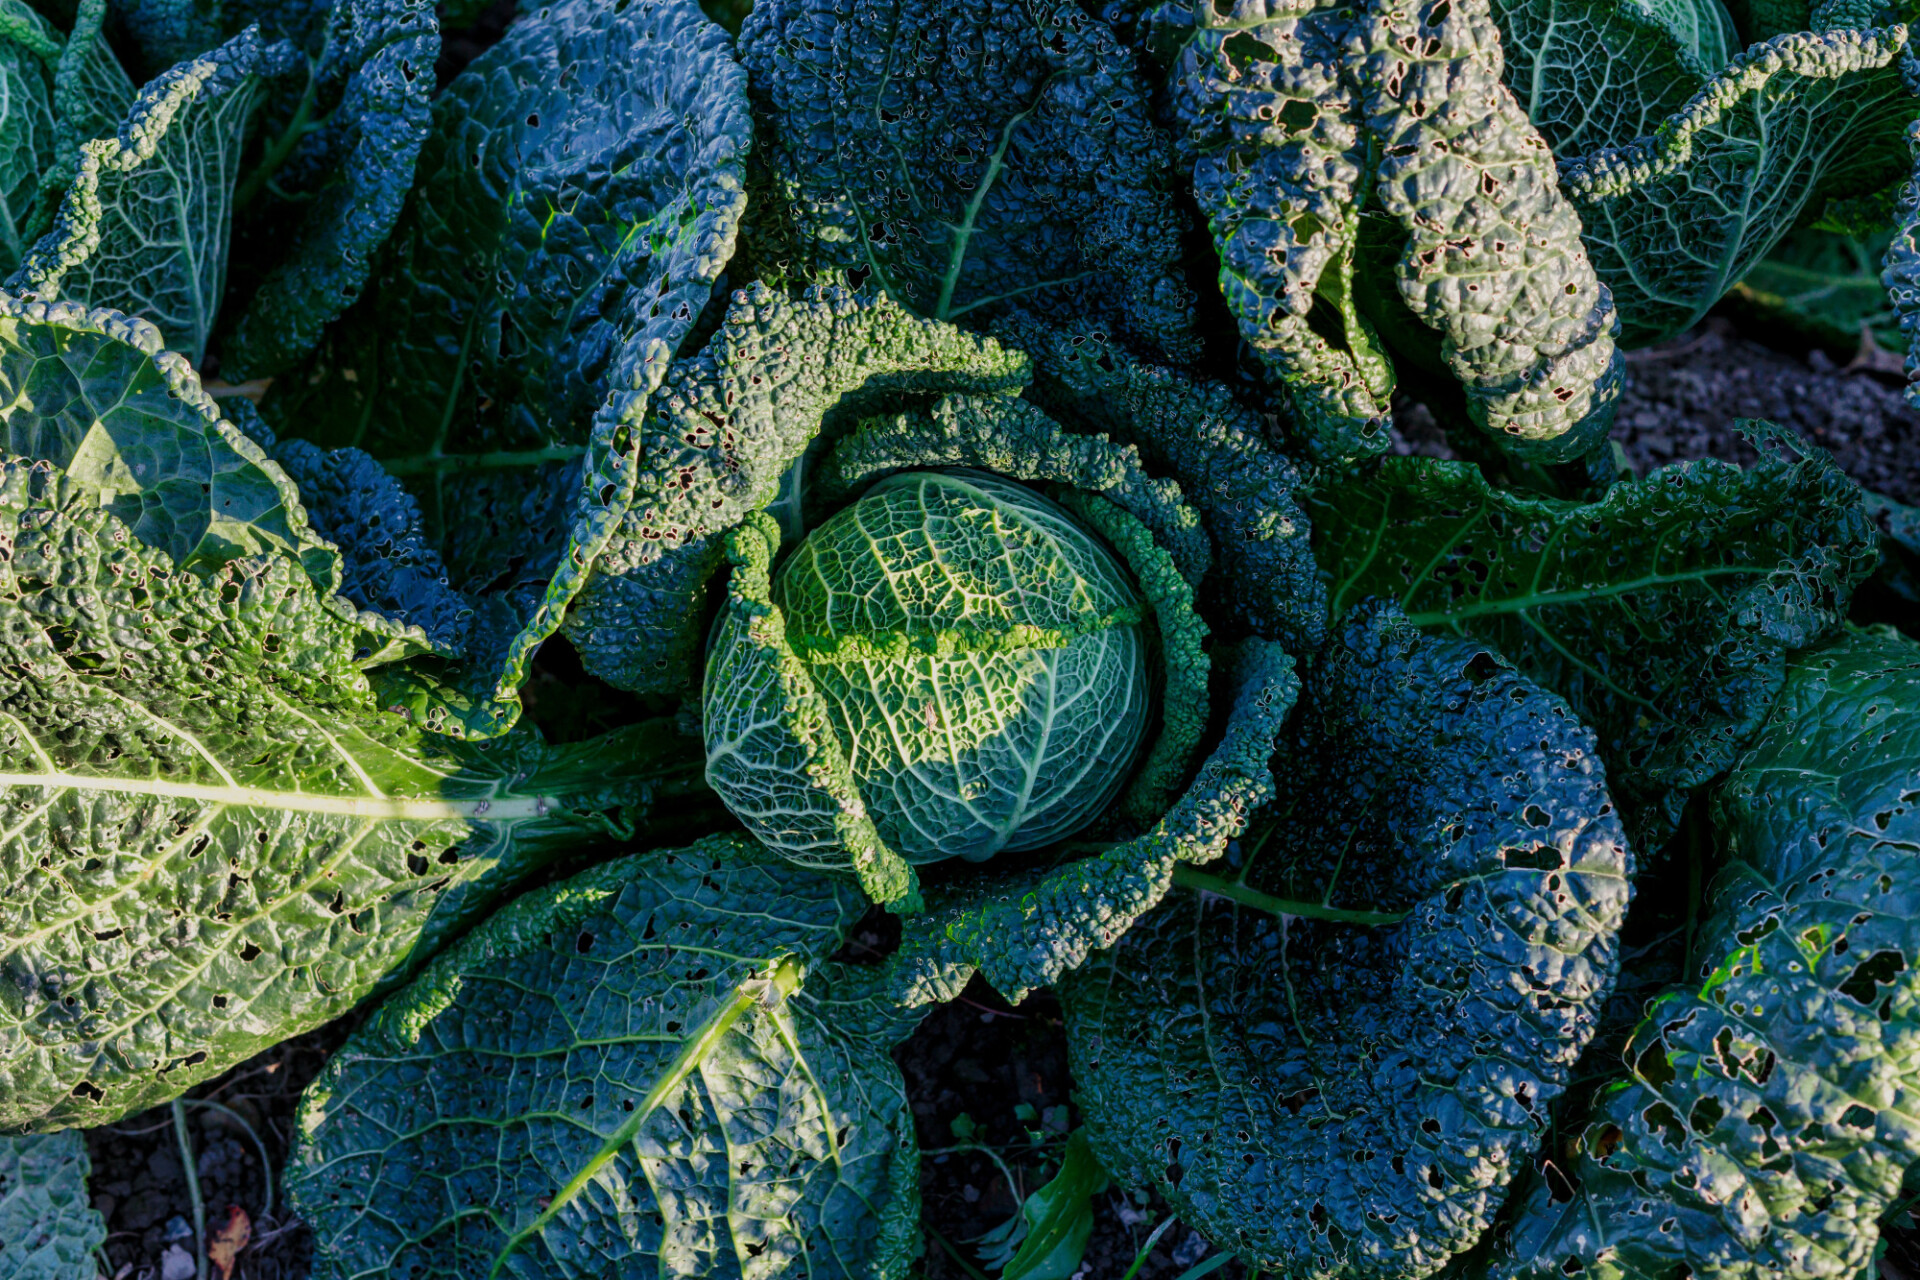 Savoy cabbage grows in the garden